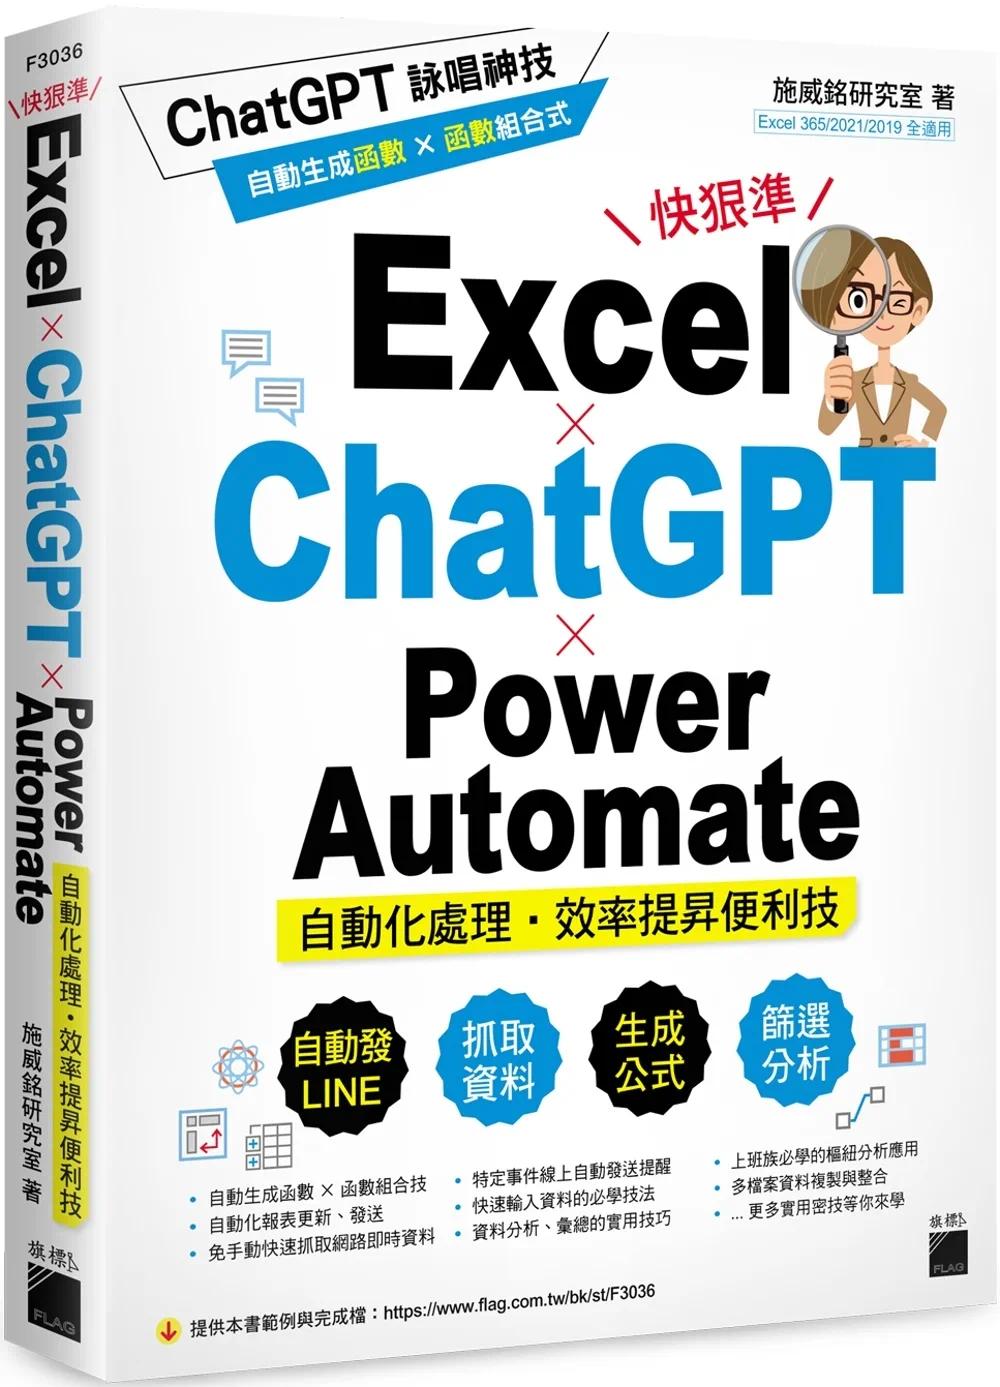 现货 施威铭研究室 Excel × ChatGPT × Power Automate 自动化处理．效率提升便利技 旗标